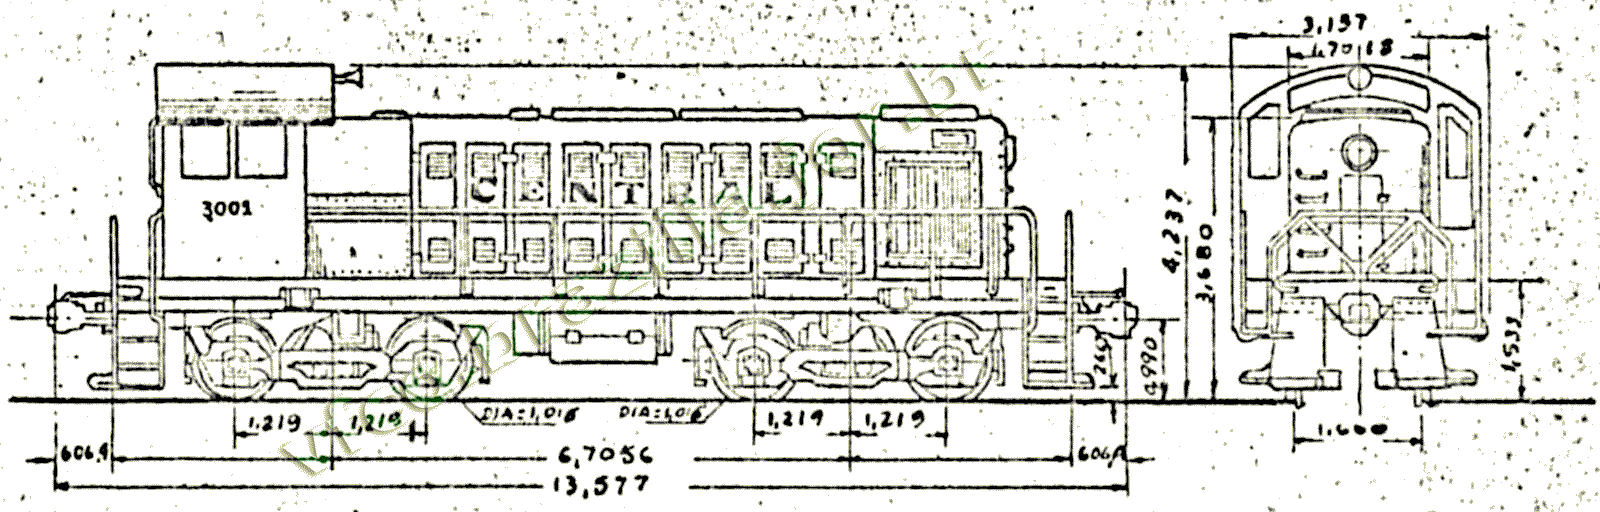 Desenho e medidas da Locomotiva Alco S-1